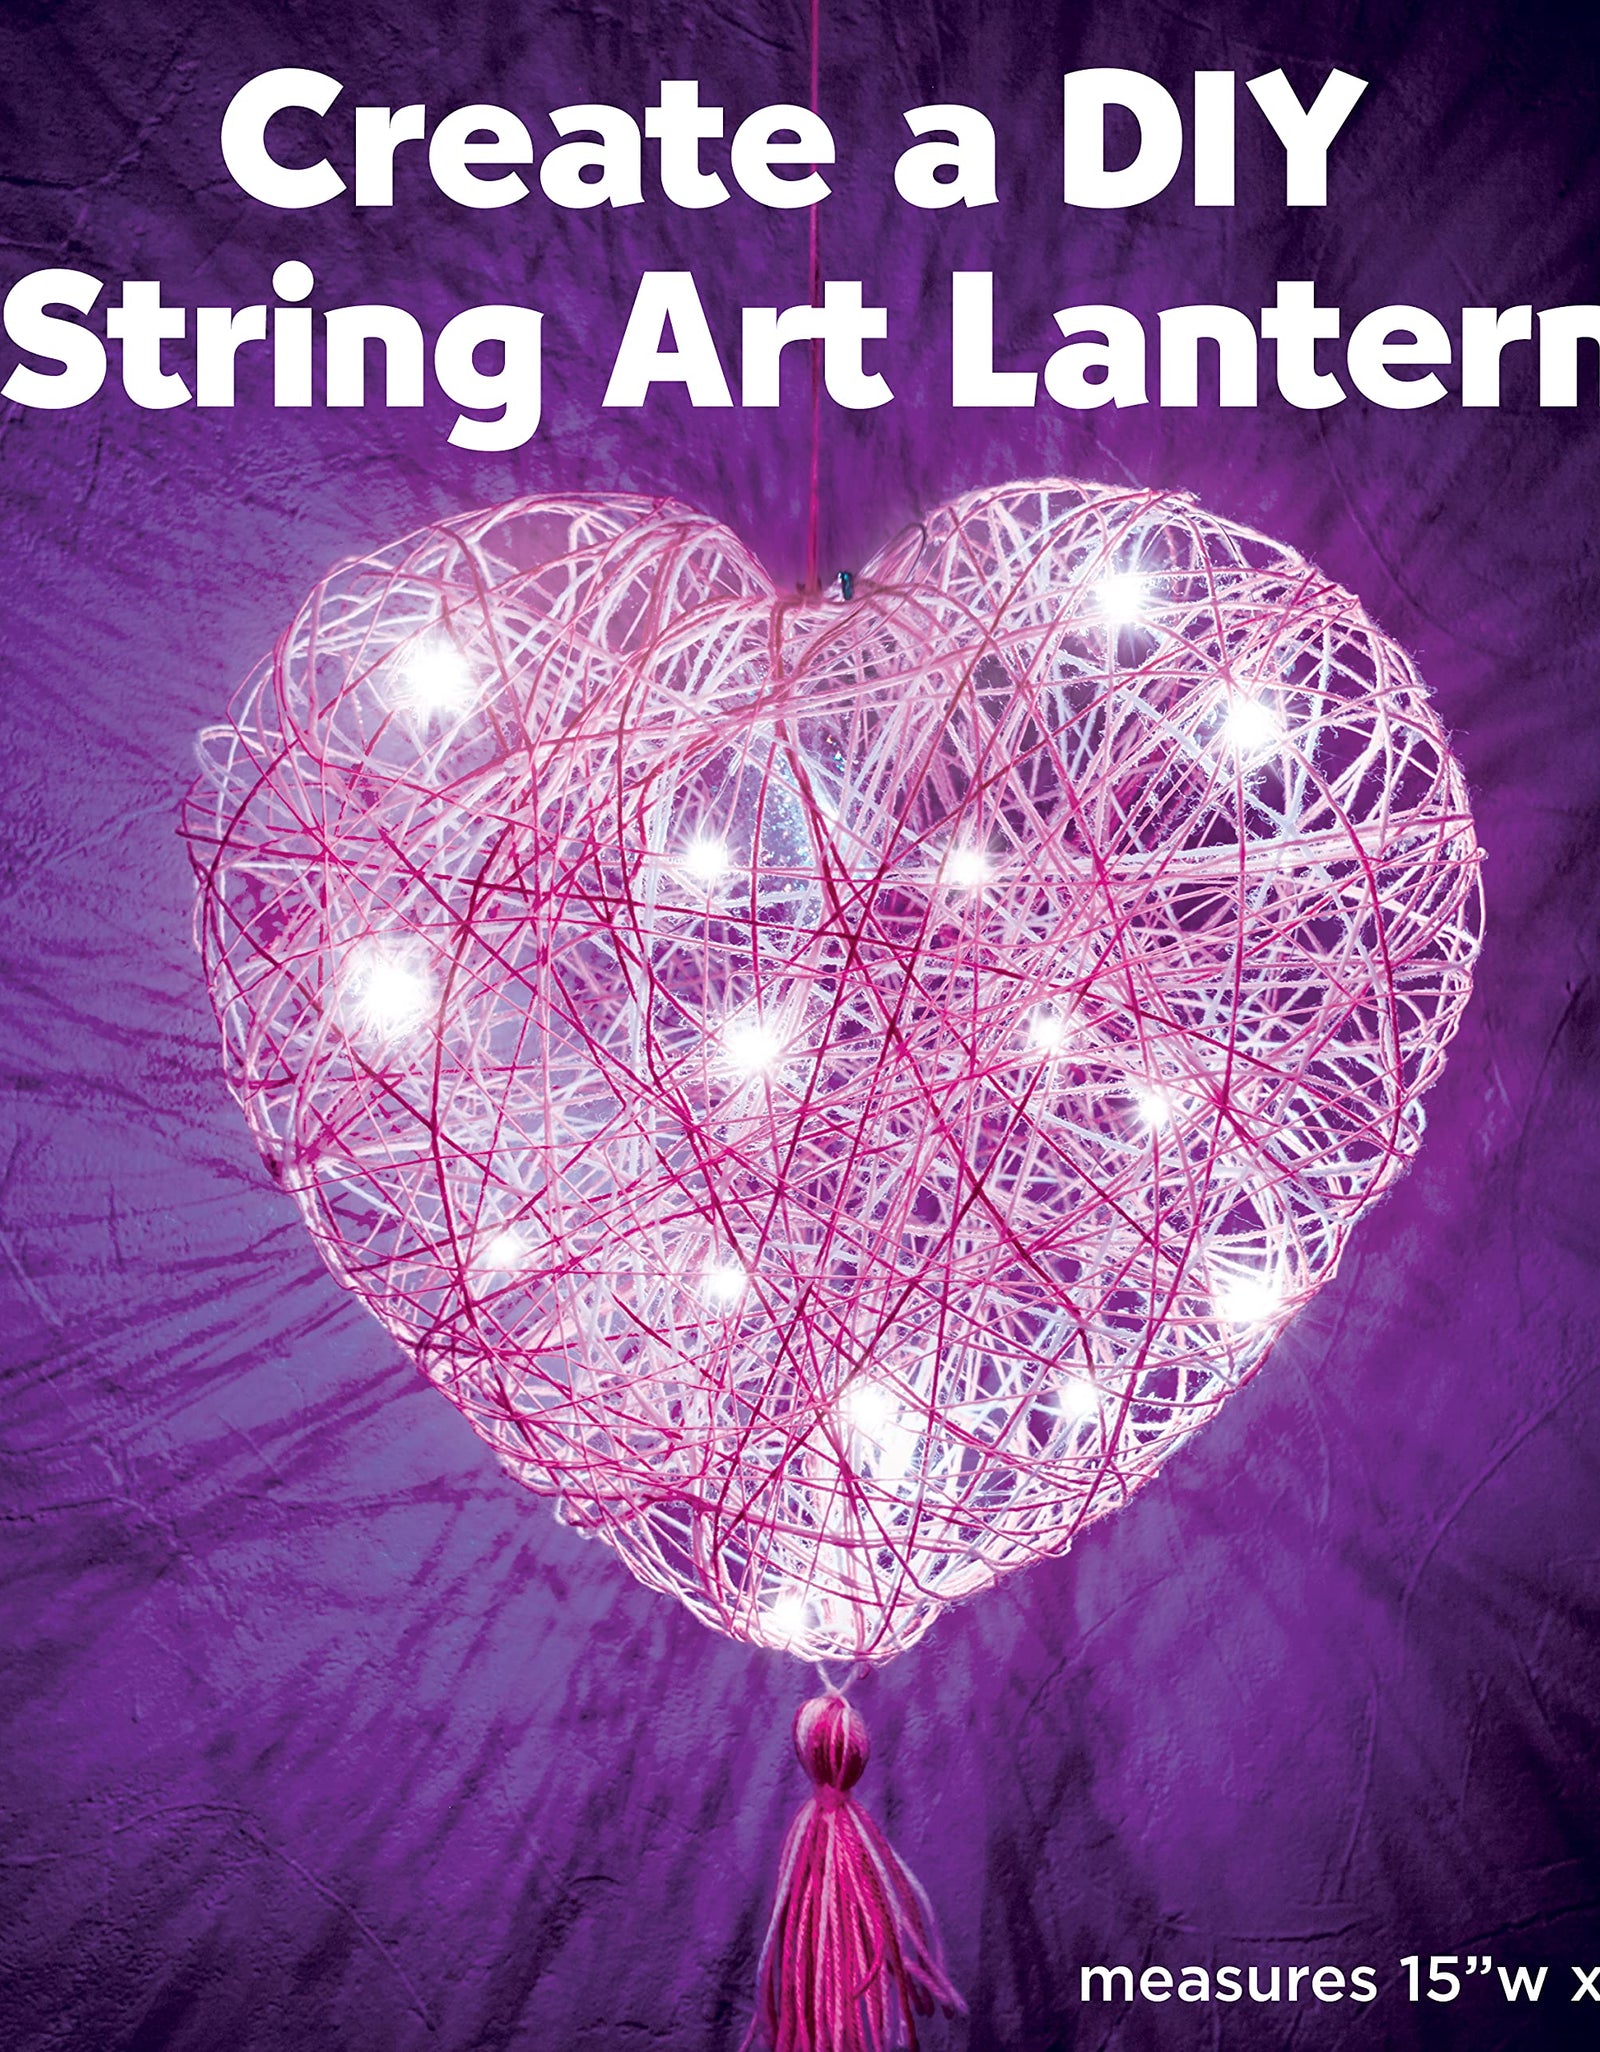 Creativity for Kids String Art Heart Light - Create a Heart Shaped String Art Lantern - String Art Kids for Kids Pink